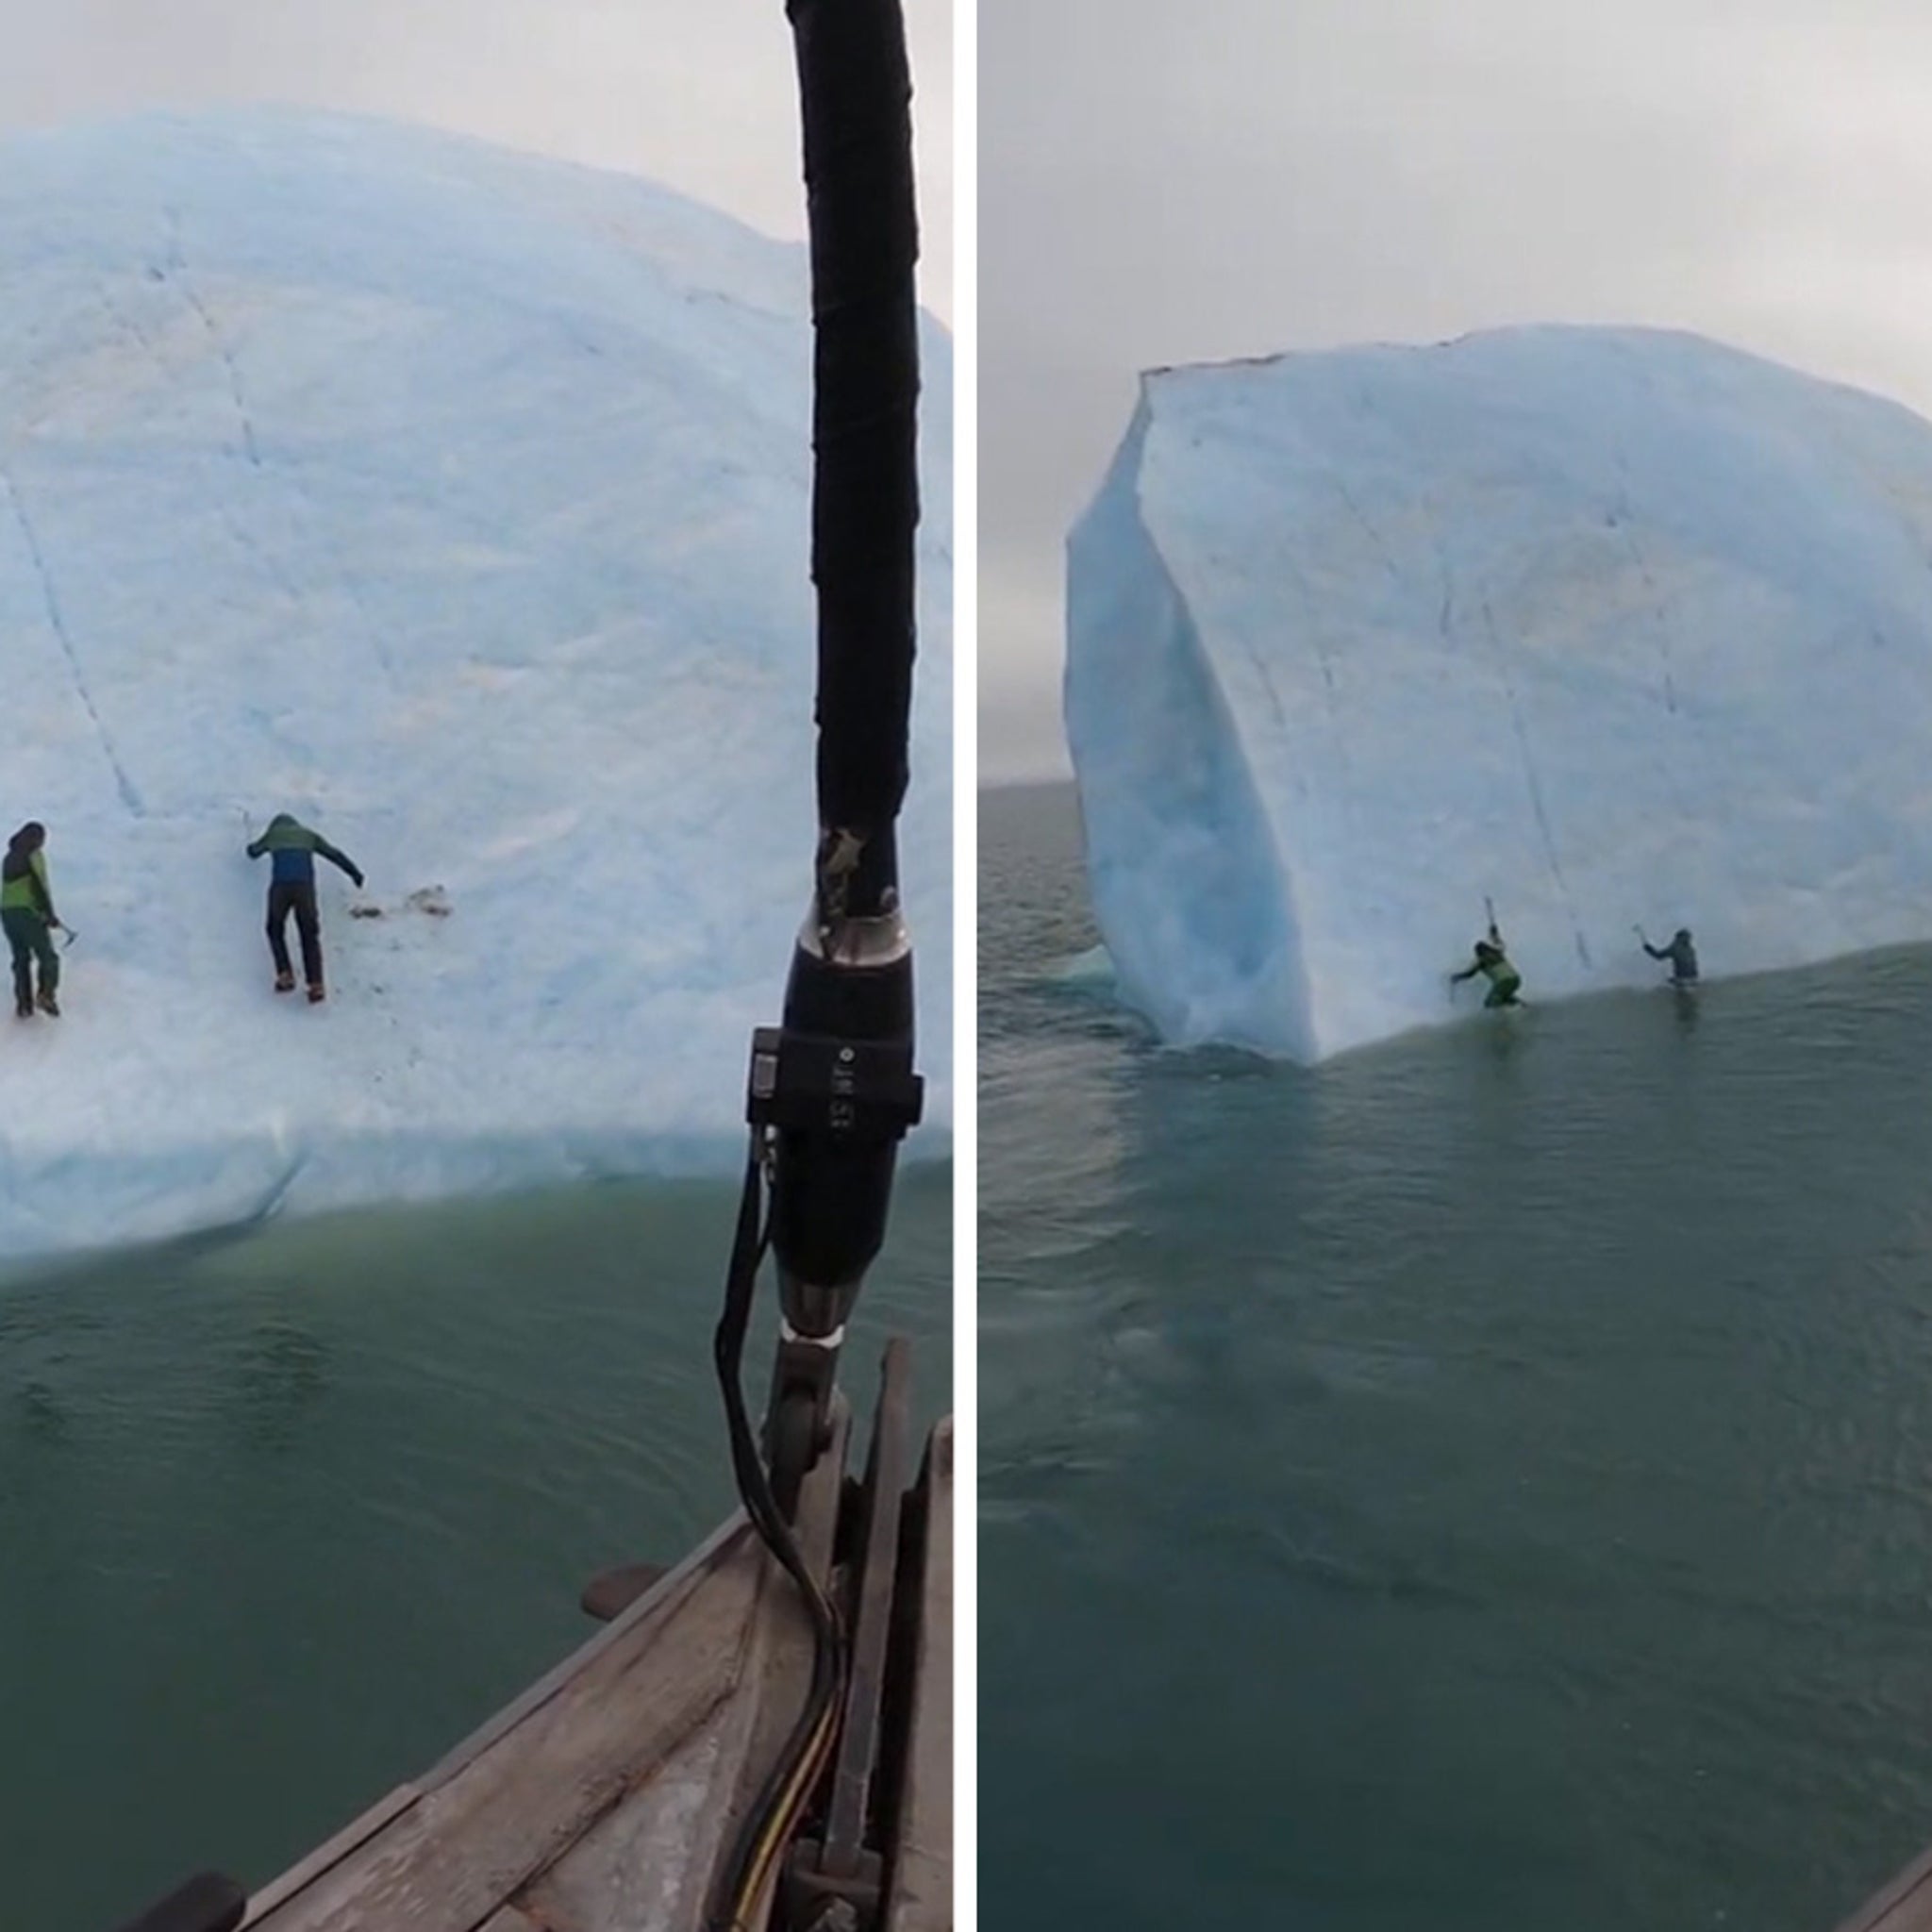 Iceberg vira repentinamente e quase esmaga exploradores no Polo Norte